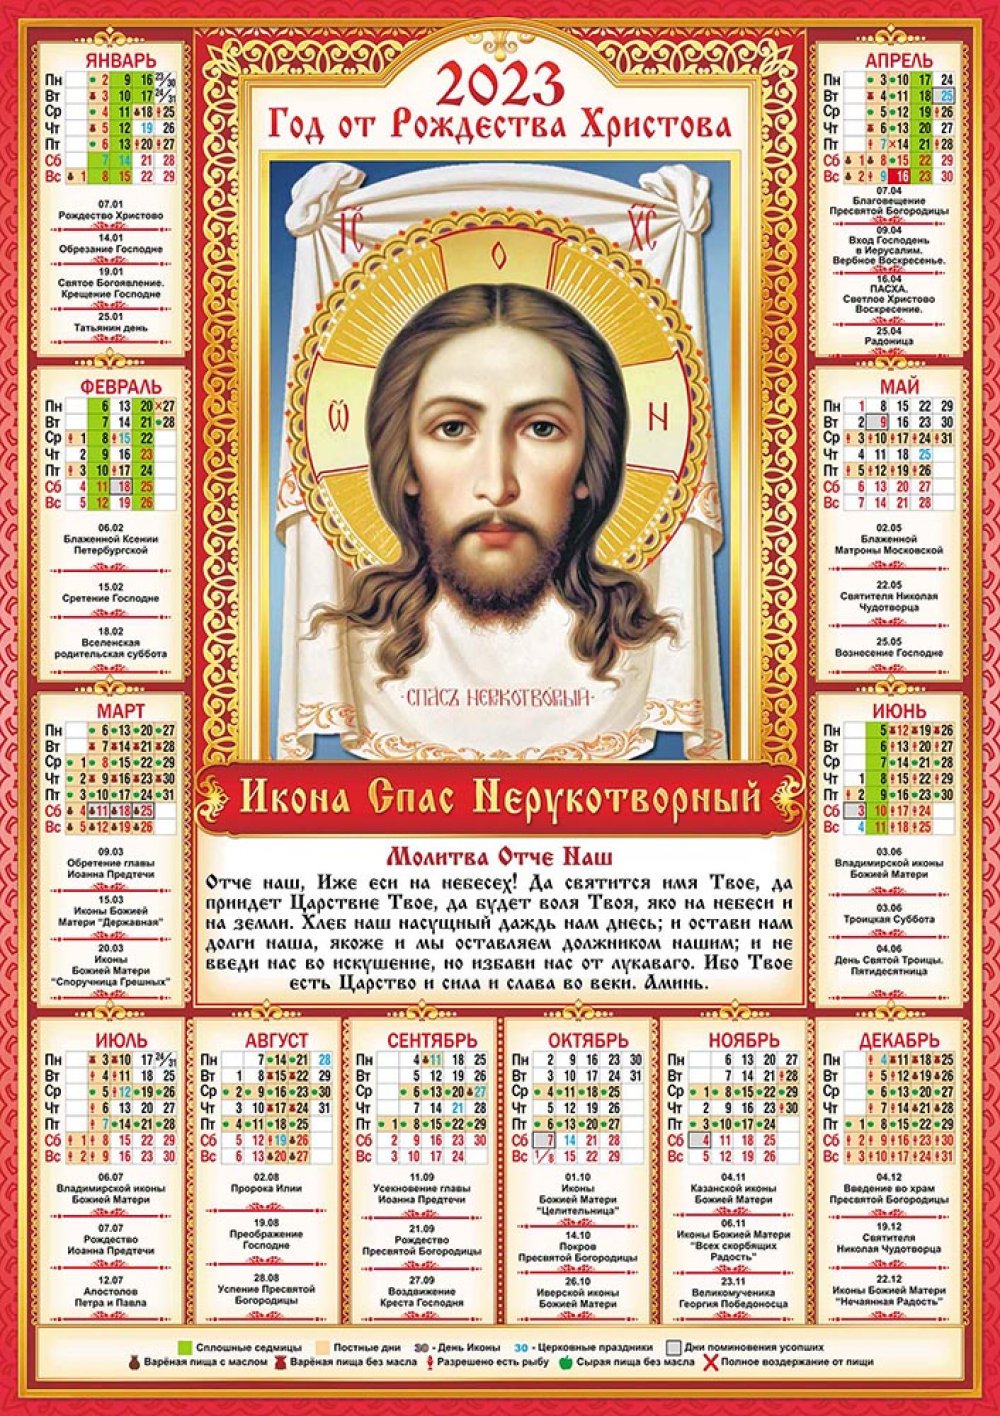 Православный календарь сегодня 2023 год. Православный календарь. Православный календарь на 2023. Православный календарь на 2023 год с праздниками.